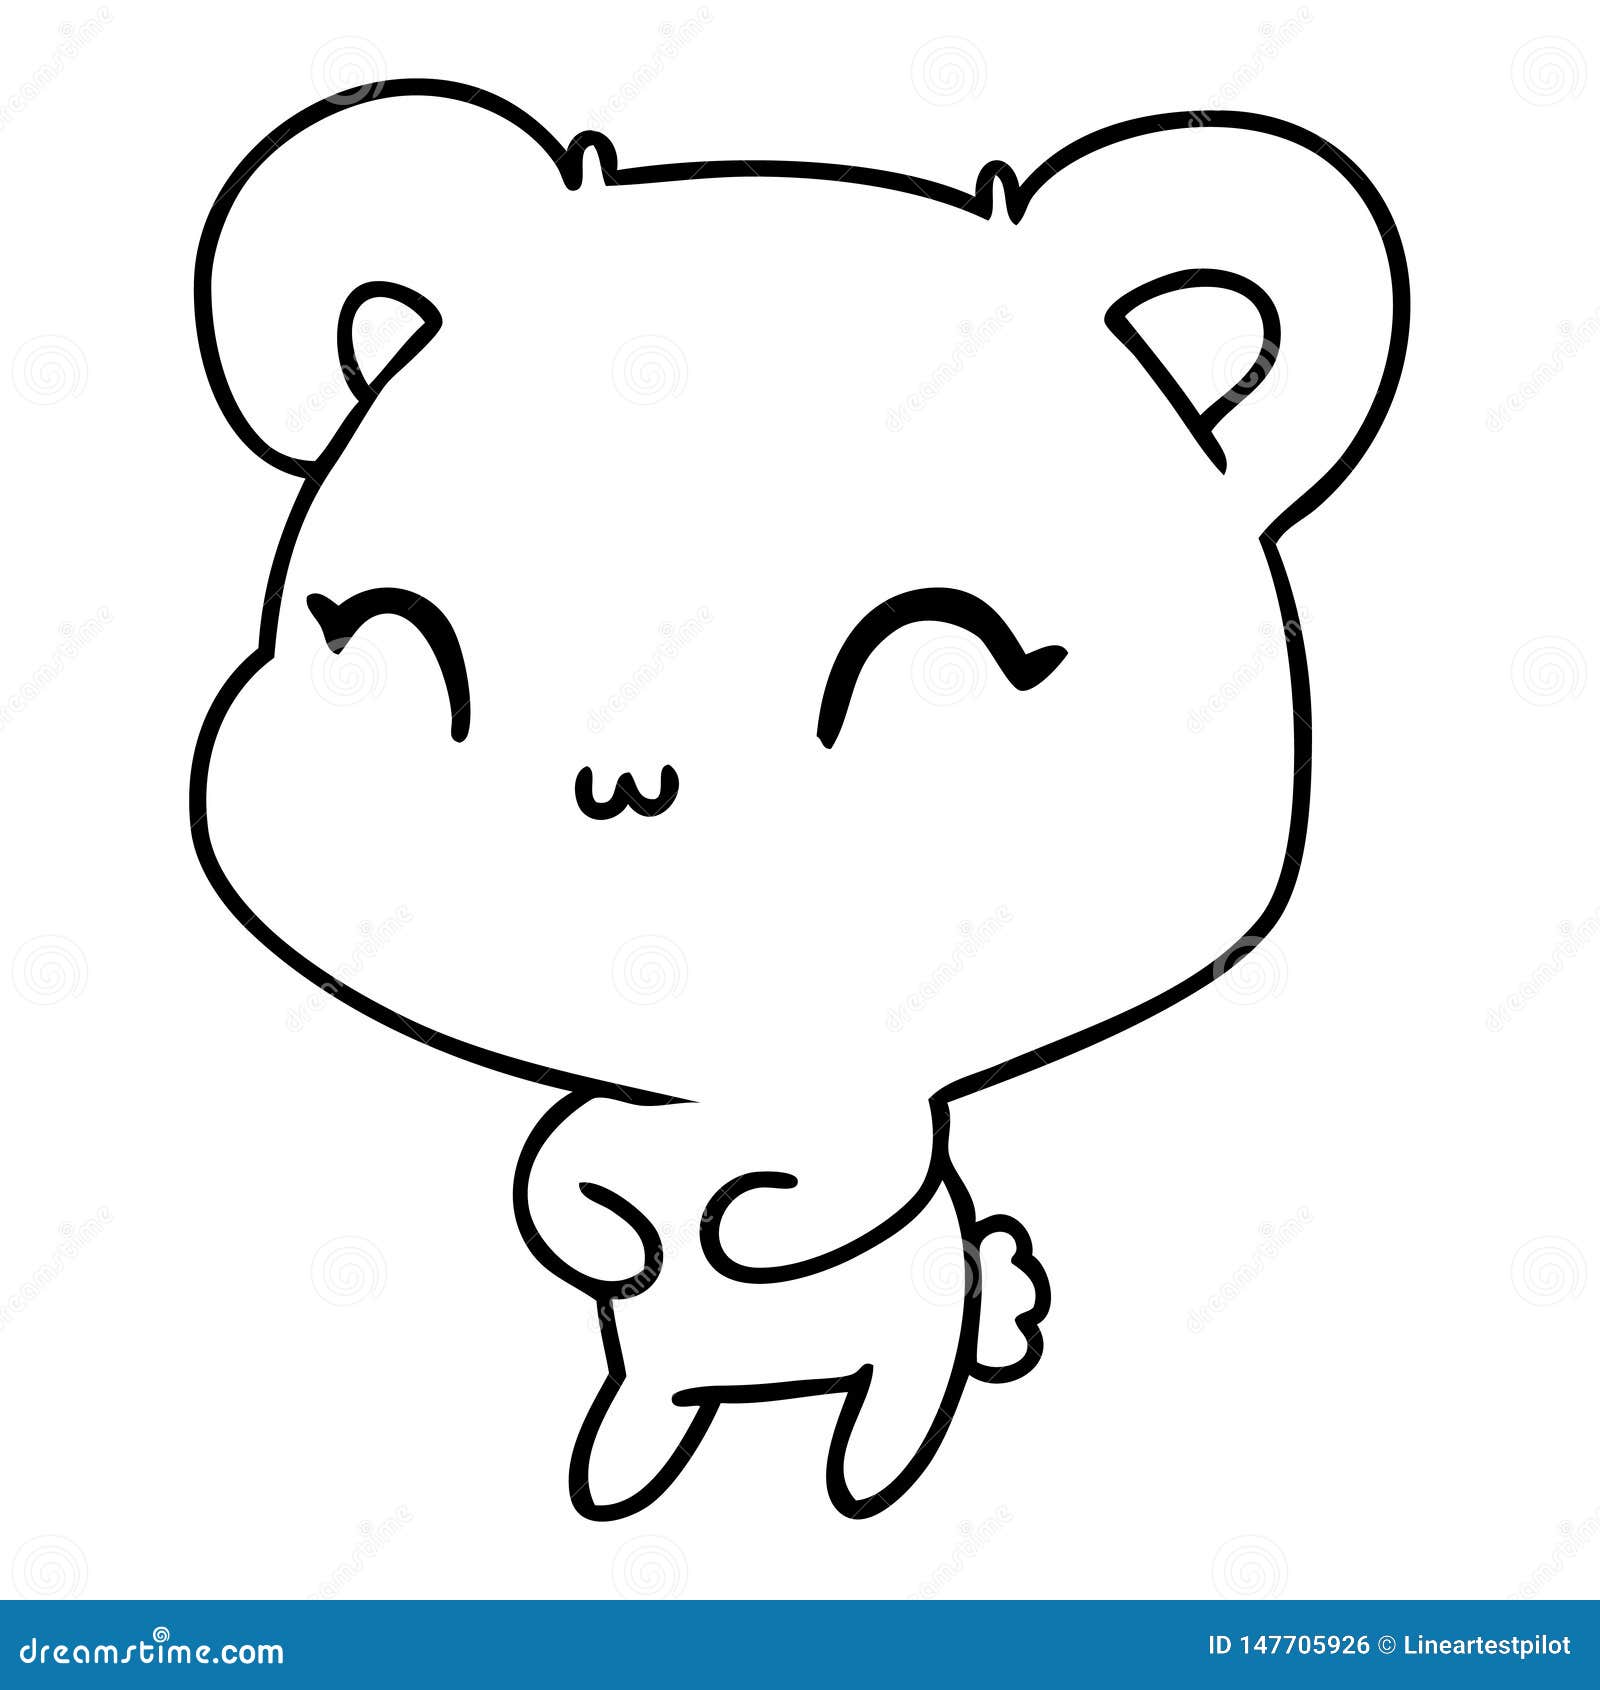 Panda kawaii desenho l desenho de animais l desenhar e colorir